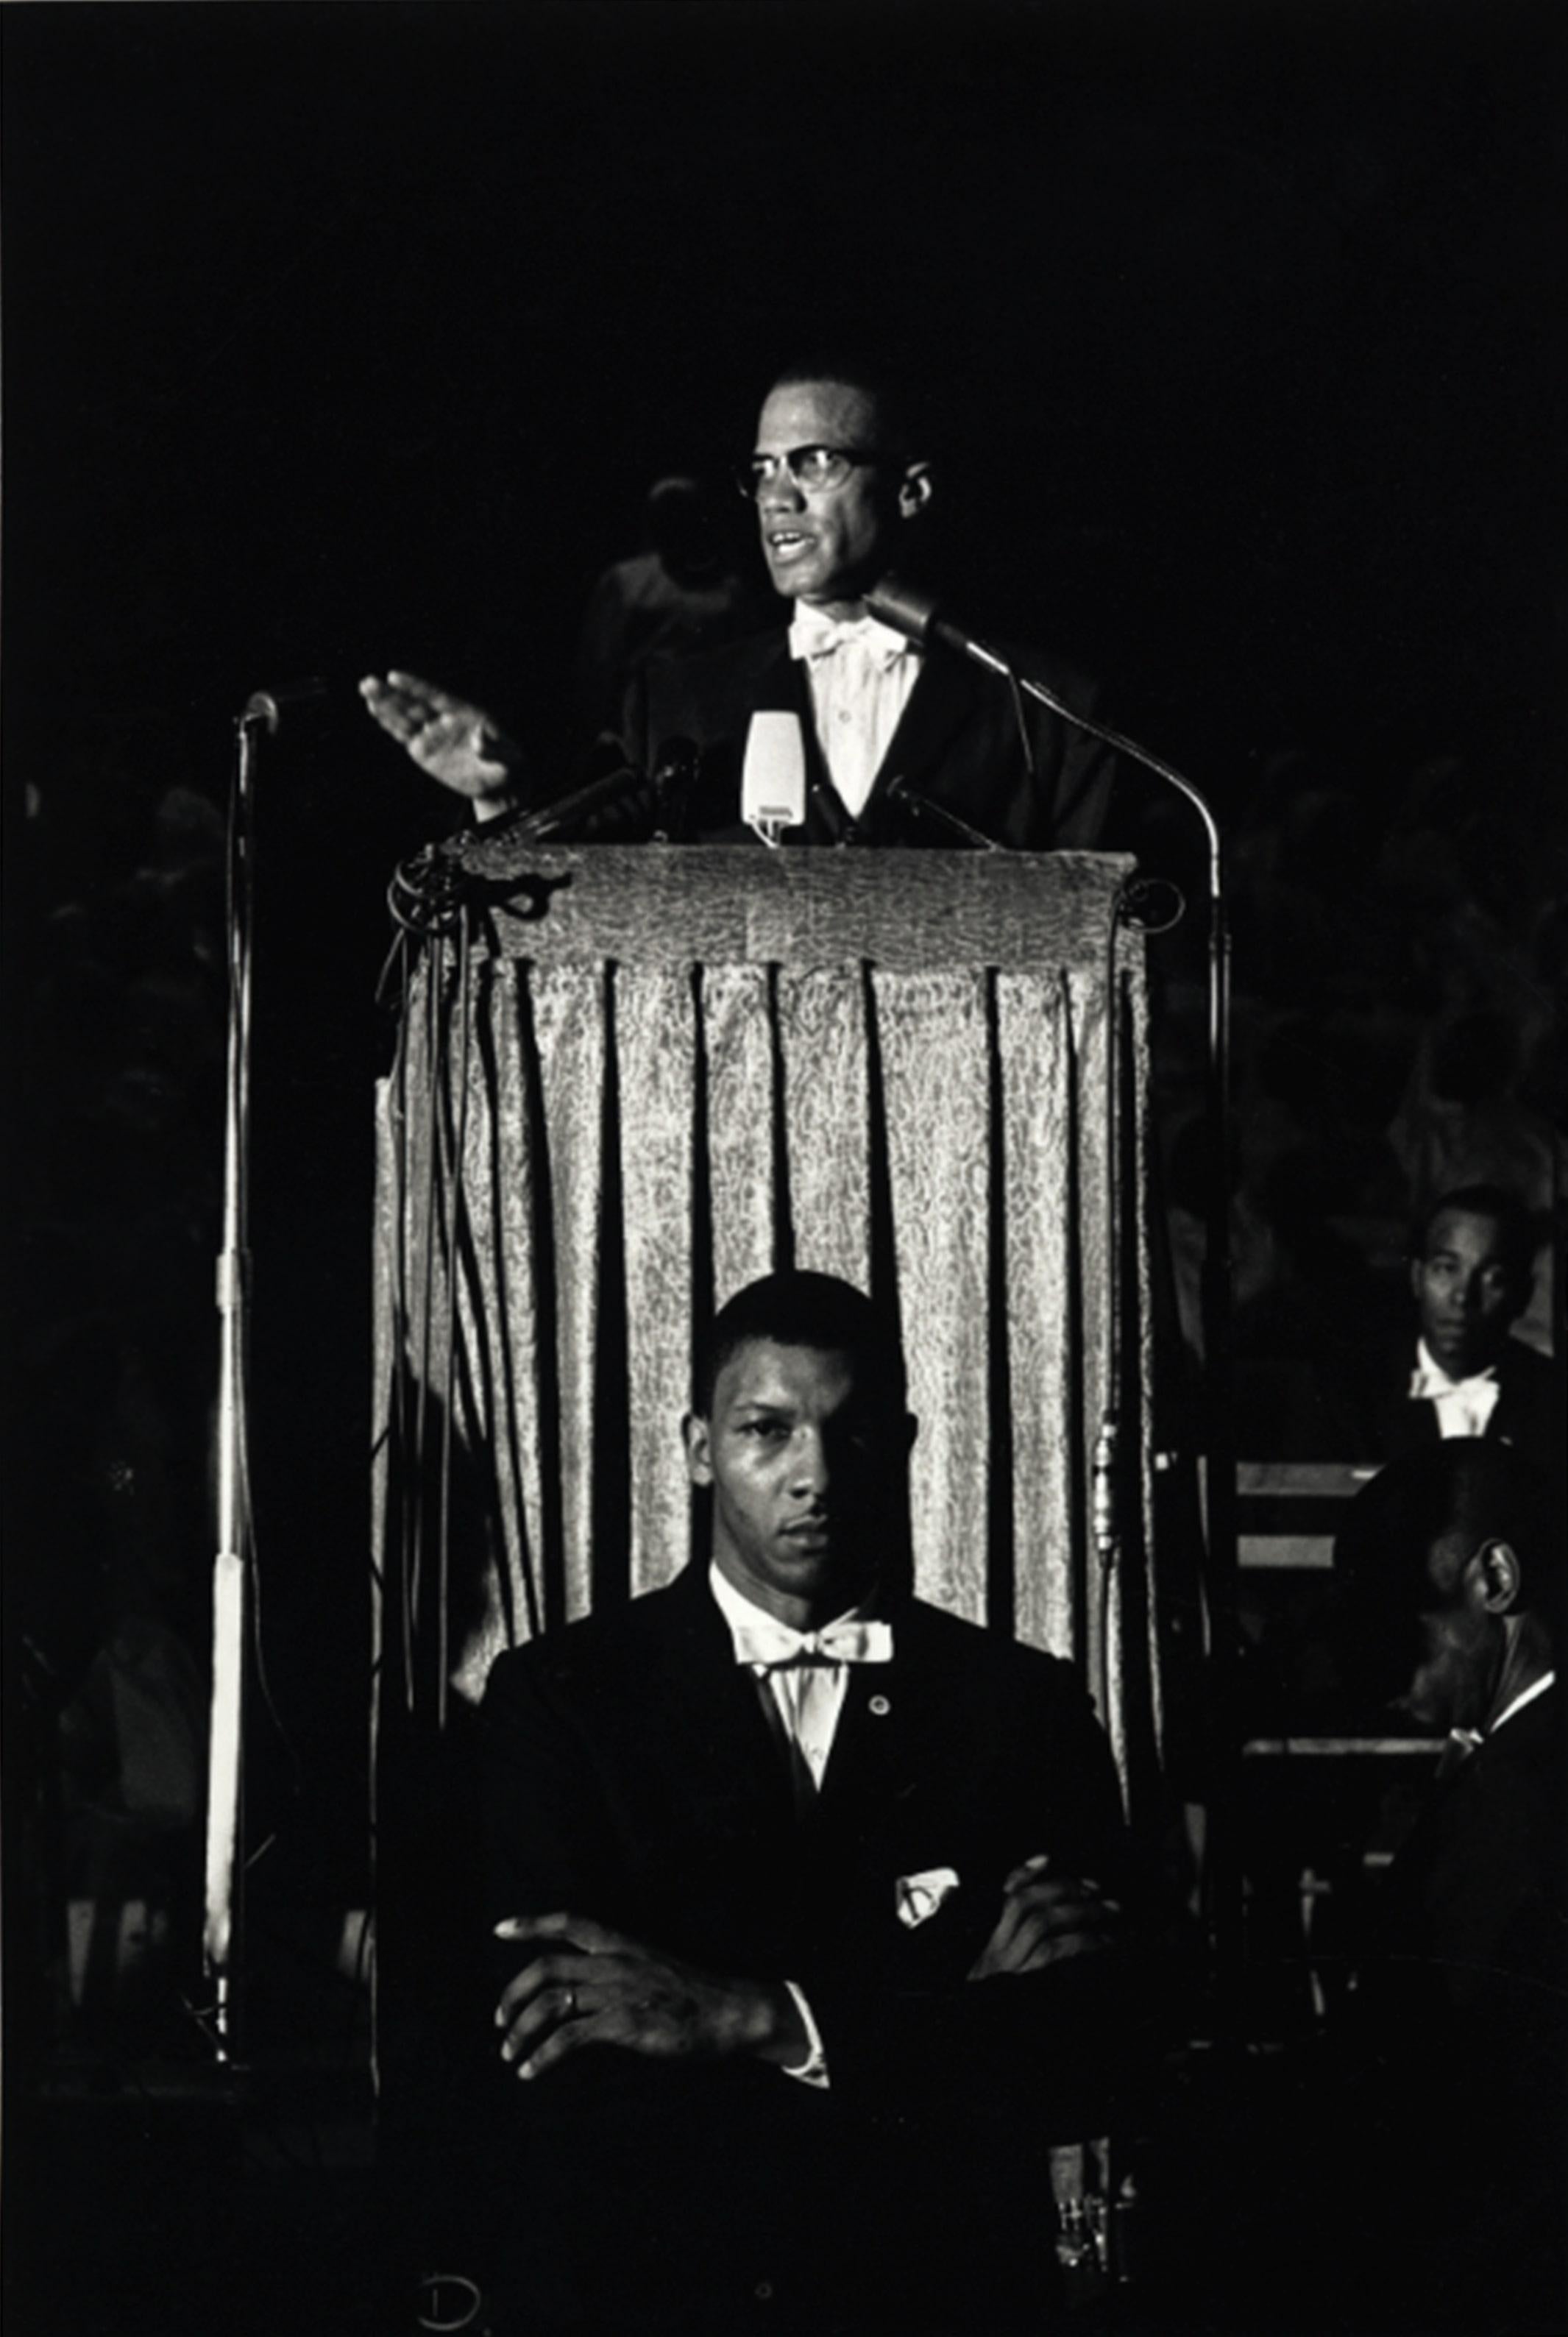 Amerikanischer muslimischer Geistlicher und Menschenrechtsaktivist Malcolm X in Chicago, Illinois, 1961.

Alle verfügbaren Größen und Ausgaben:
24" x 20", Auflage 25 + 3 Probedrucke
34" x 24", Auflage 25 + 3 Probedrucke

"Eve Arnold, 1912 als